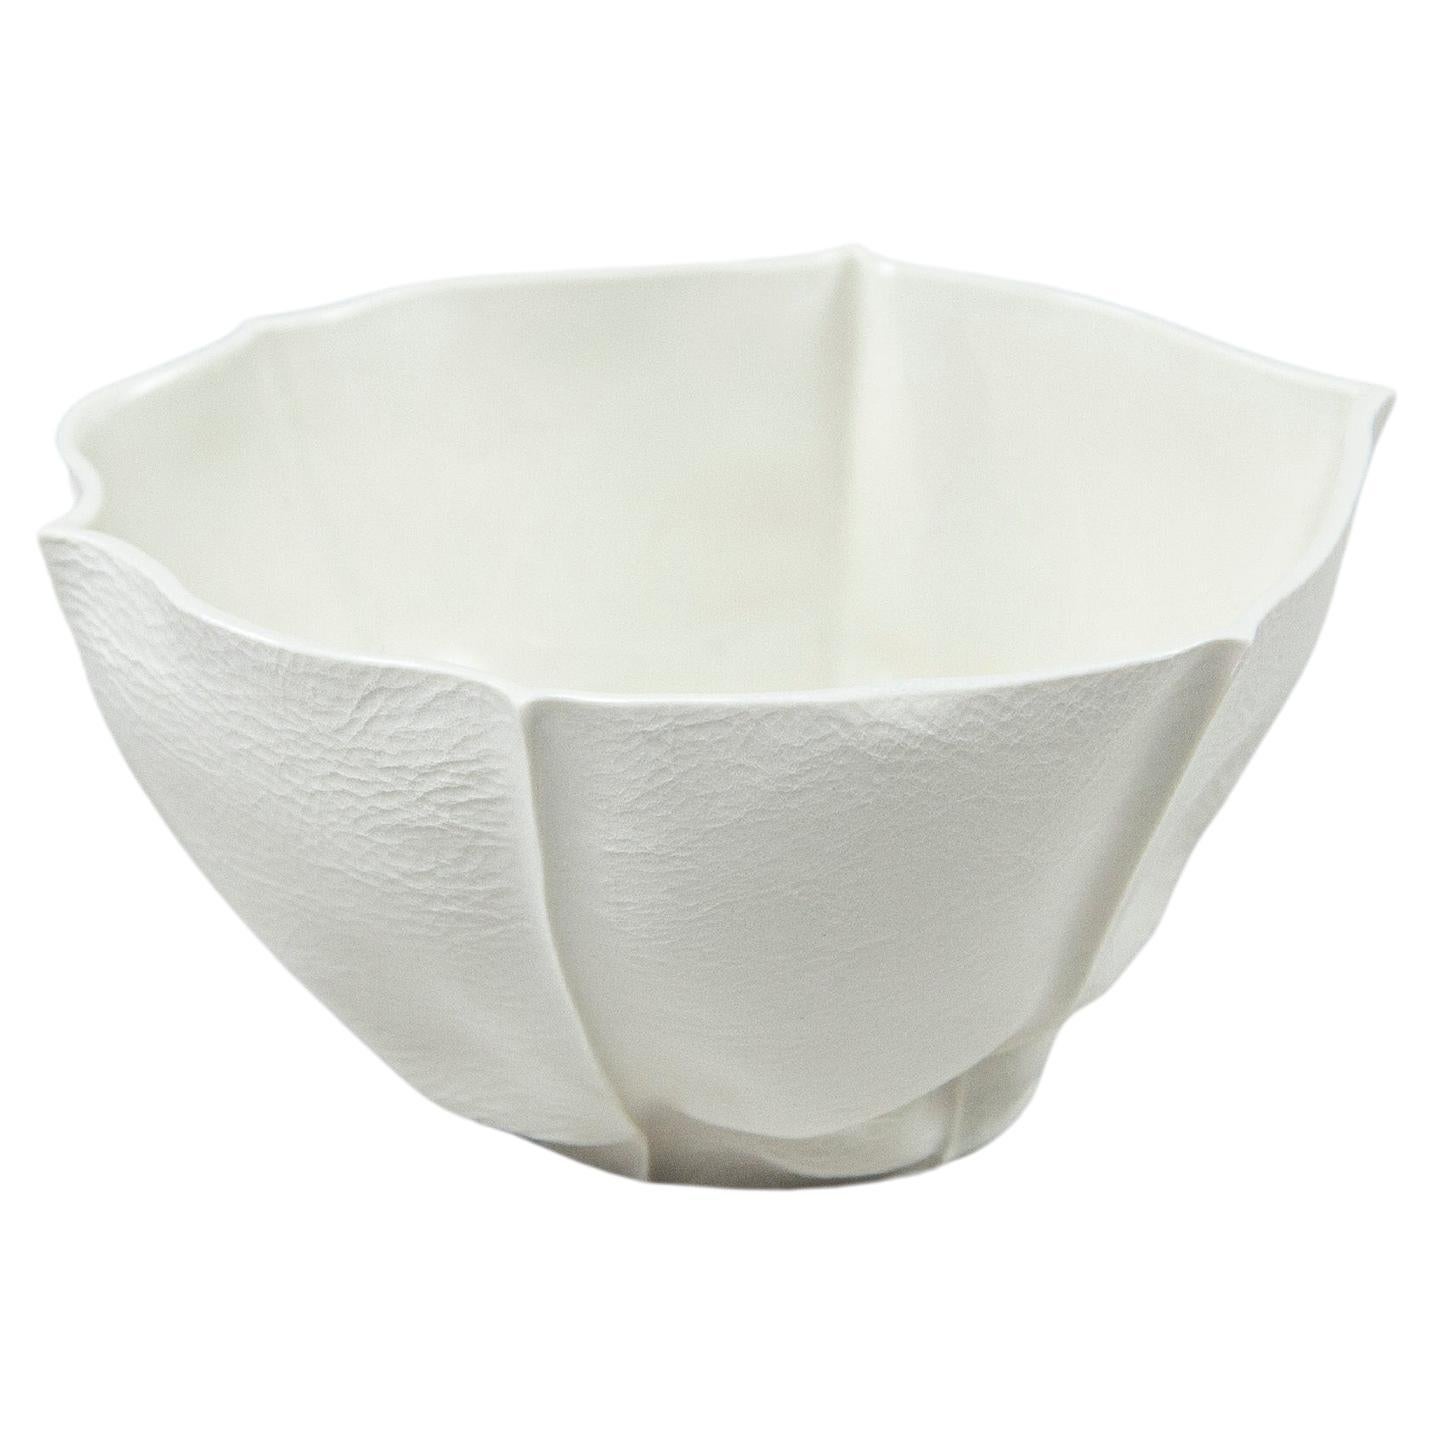 Bol Kawa en porcelaine blanche, récipient en céramique moulée en cuir, forme organique, en stock en vente